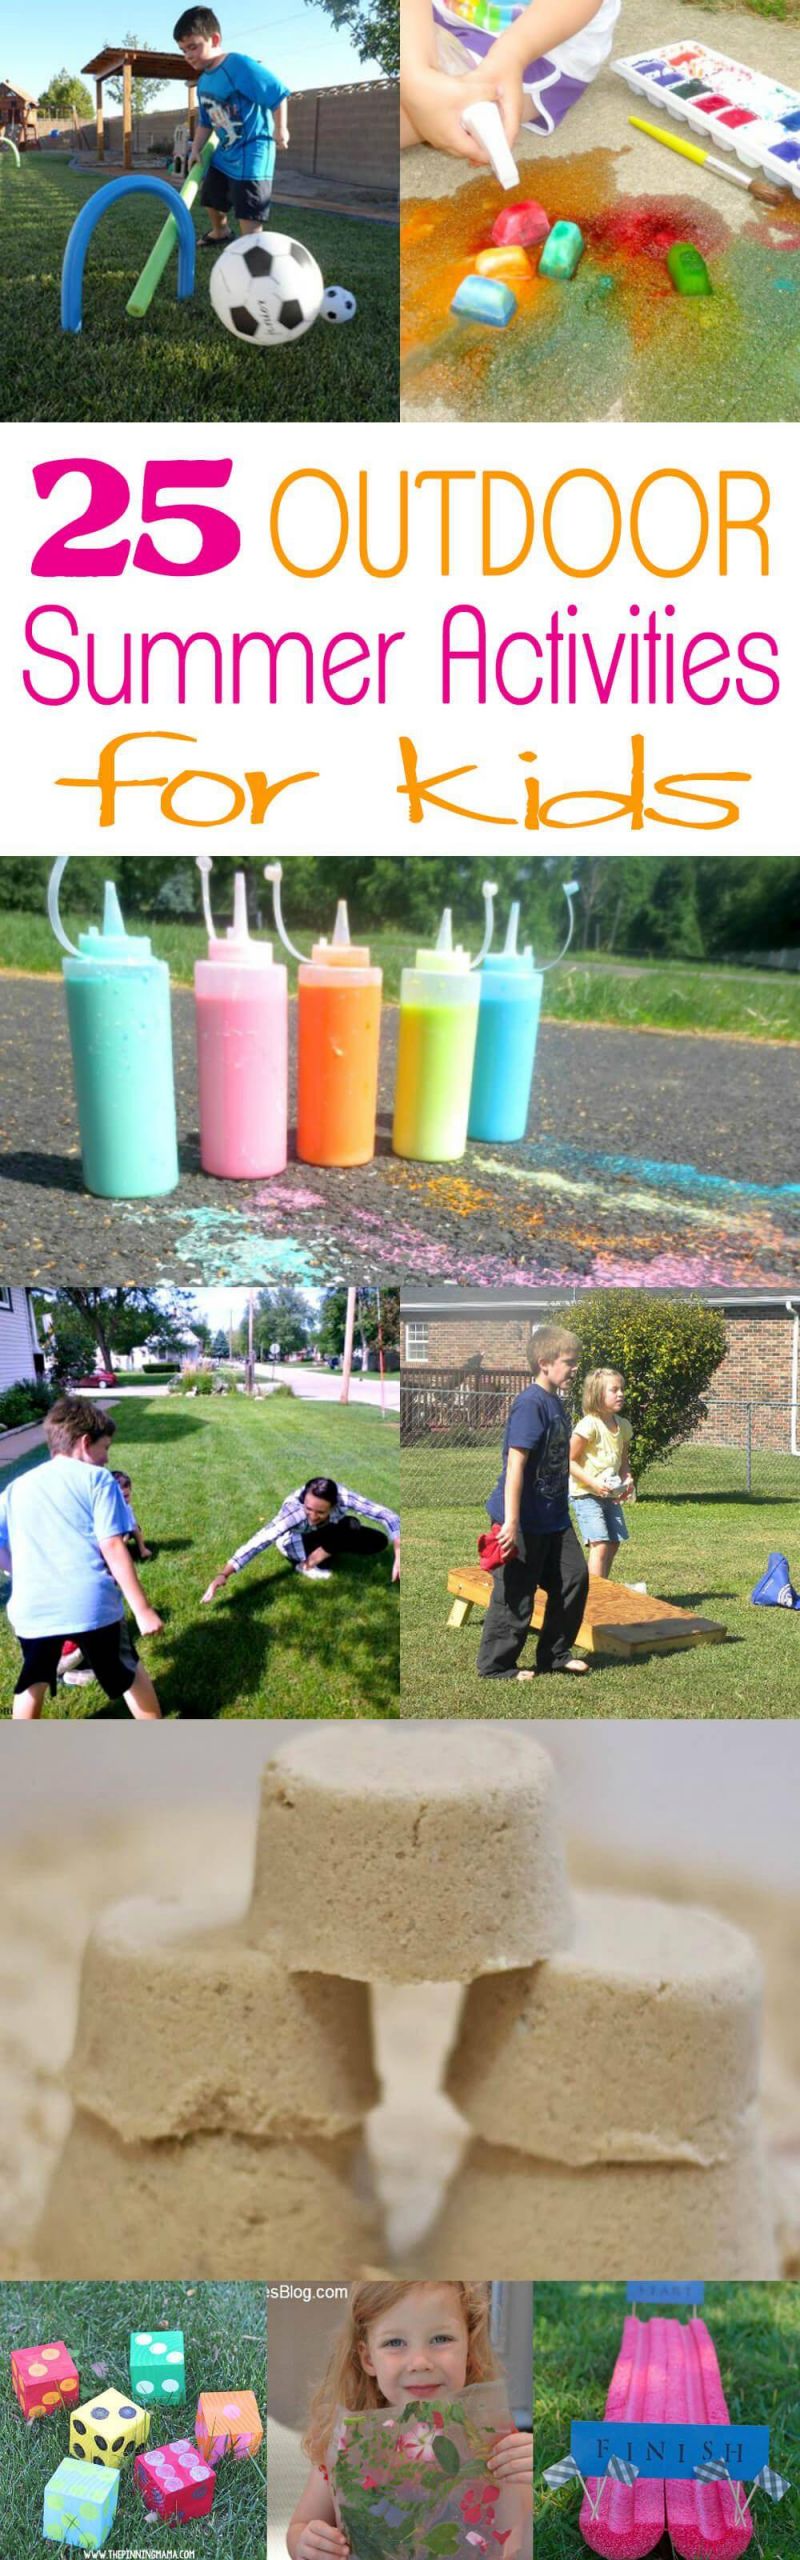 Fun Outdoor Activities For Kids
 25 Outdoor Summer Activities for Kids